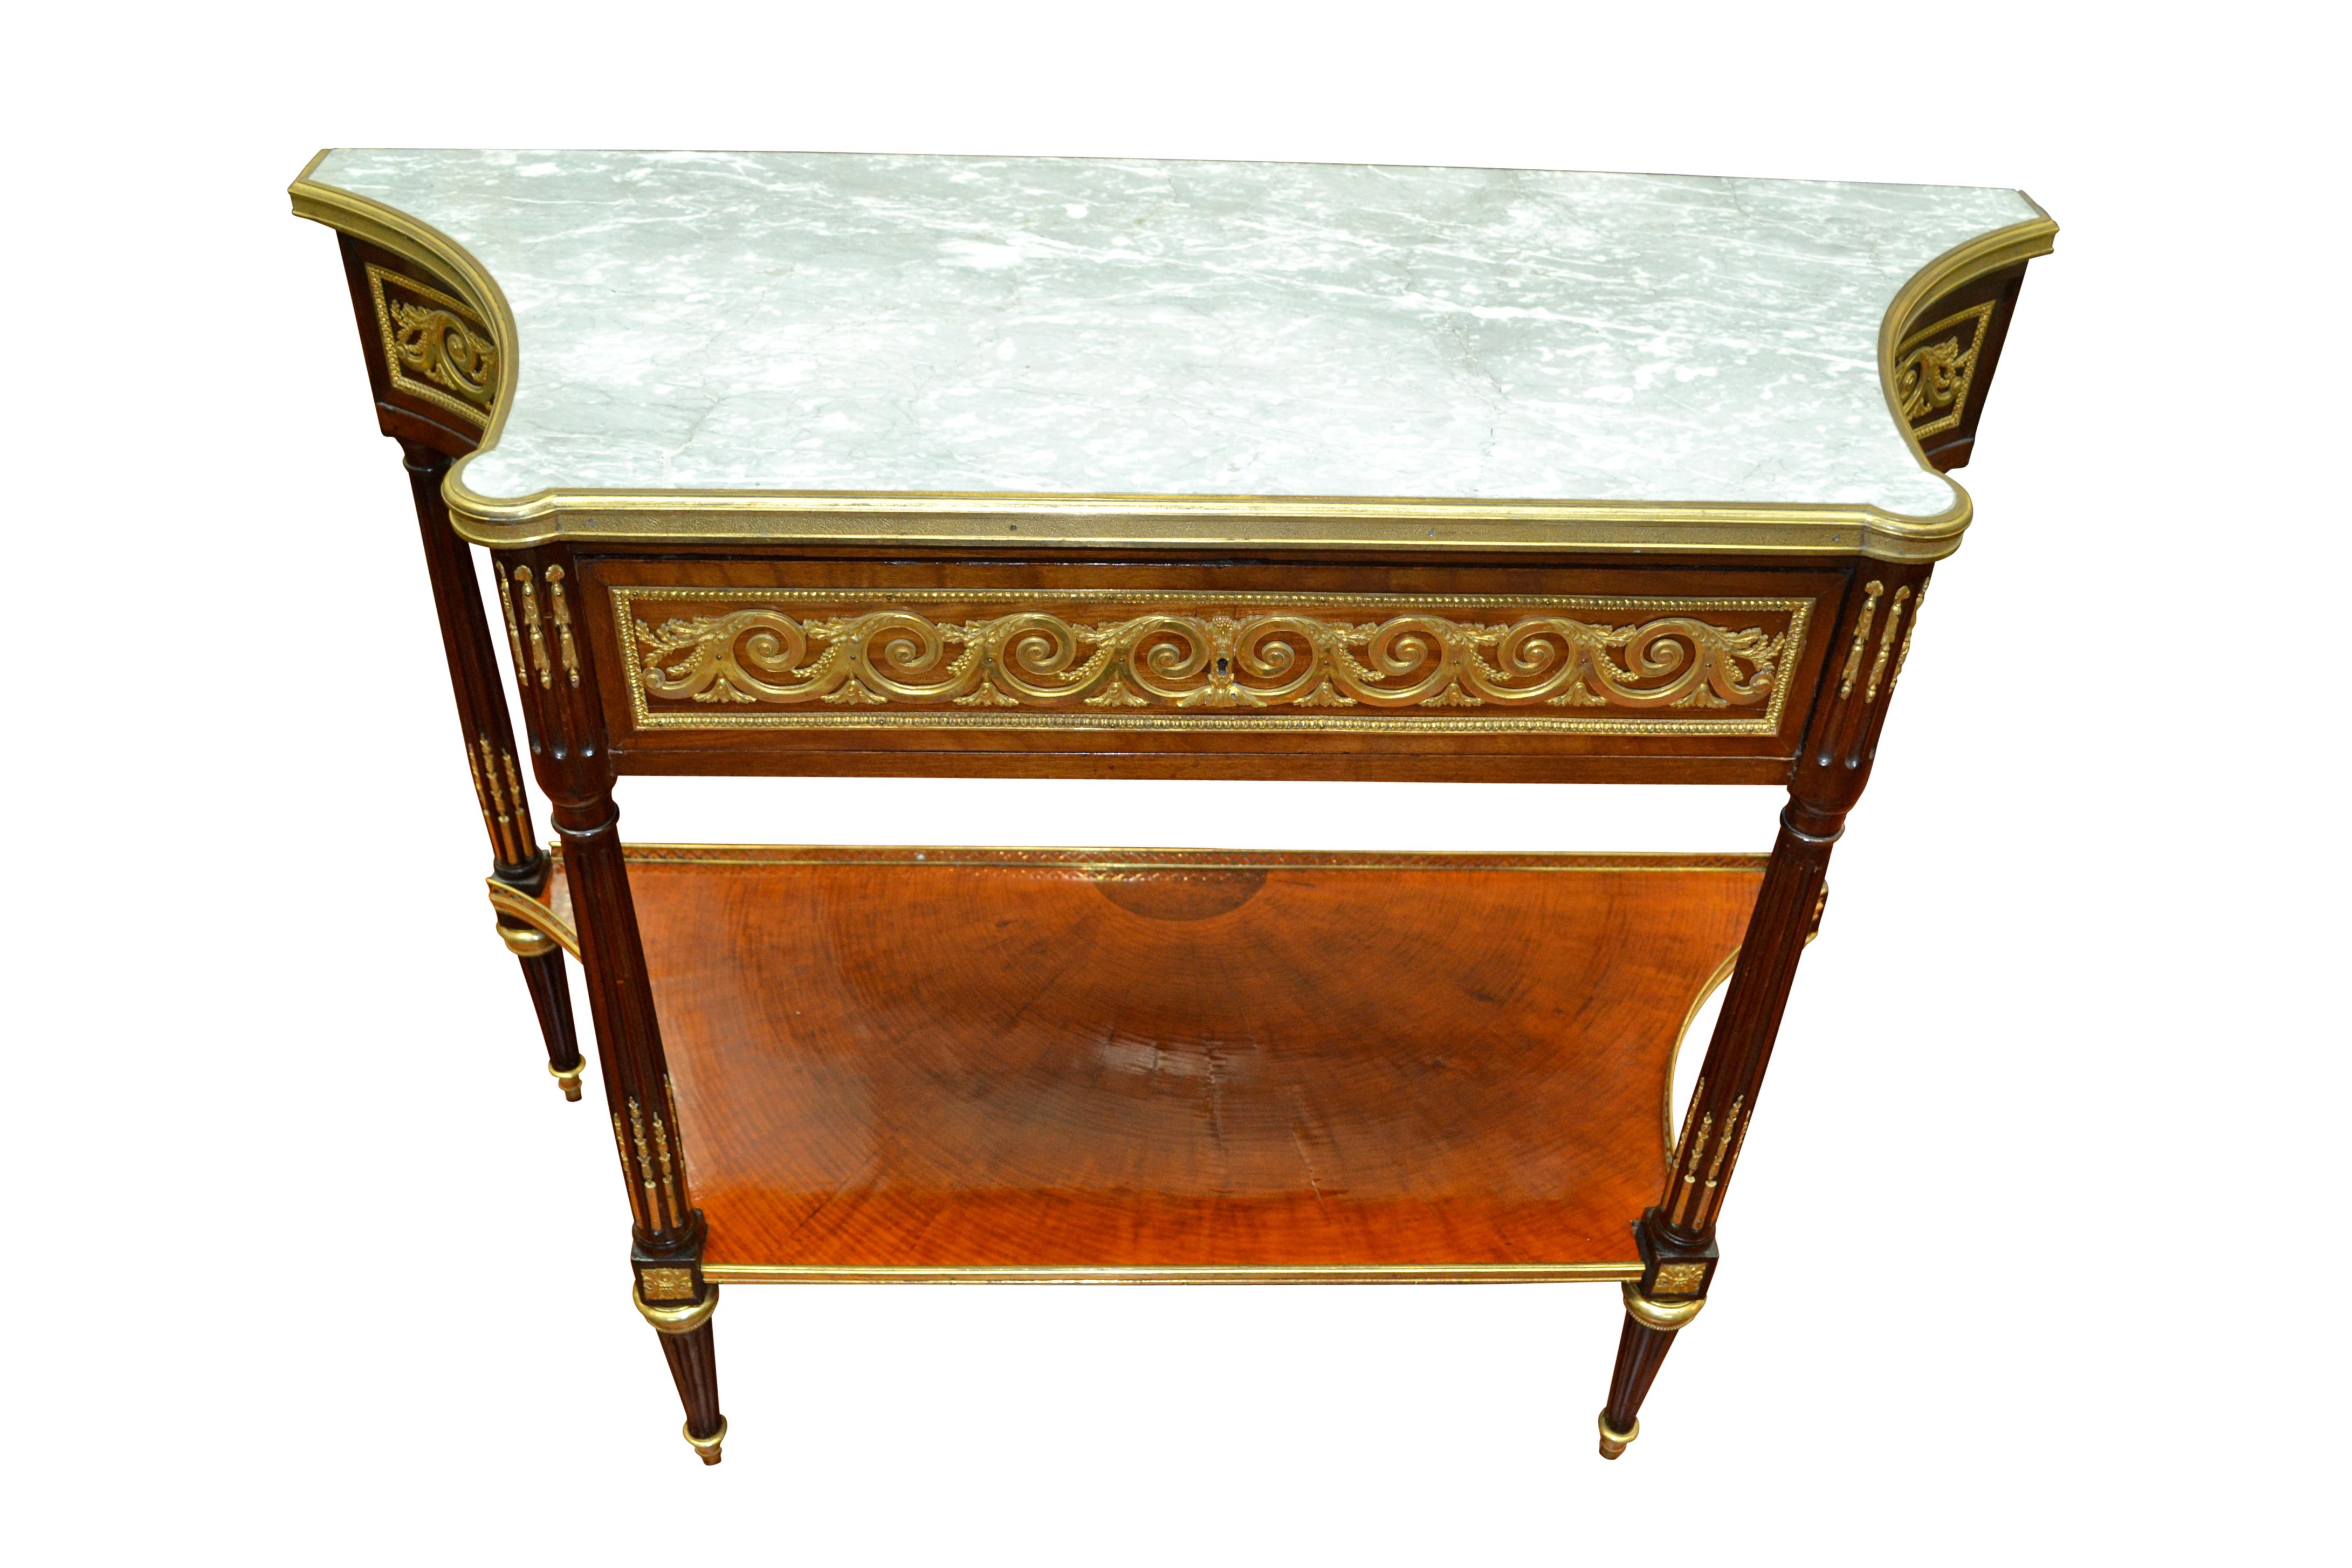 Der Desserttisch im Louis XVI-Stil ist aus Mahagoni gefertigt, dessen Oberteil reich mit vergoldeten vitruvianischen Bronzeschnecken und anderen dekorativen Beschlägen verziert ist, die alle von Dasson oder Linke stammen. Der obere Mittelteil